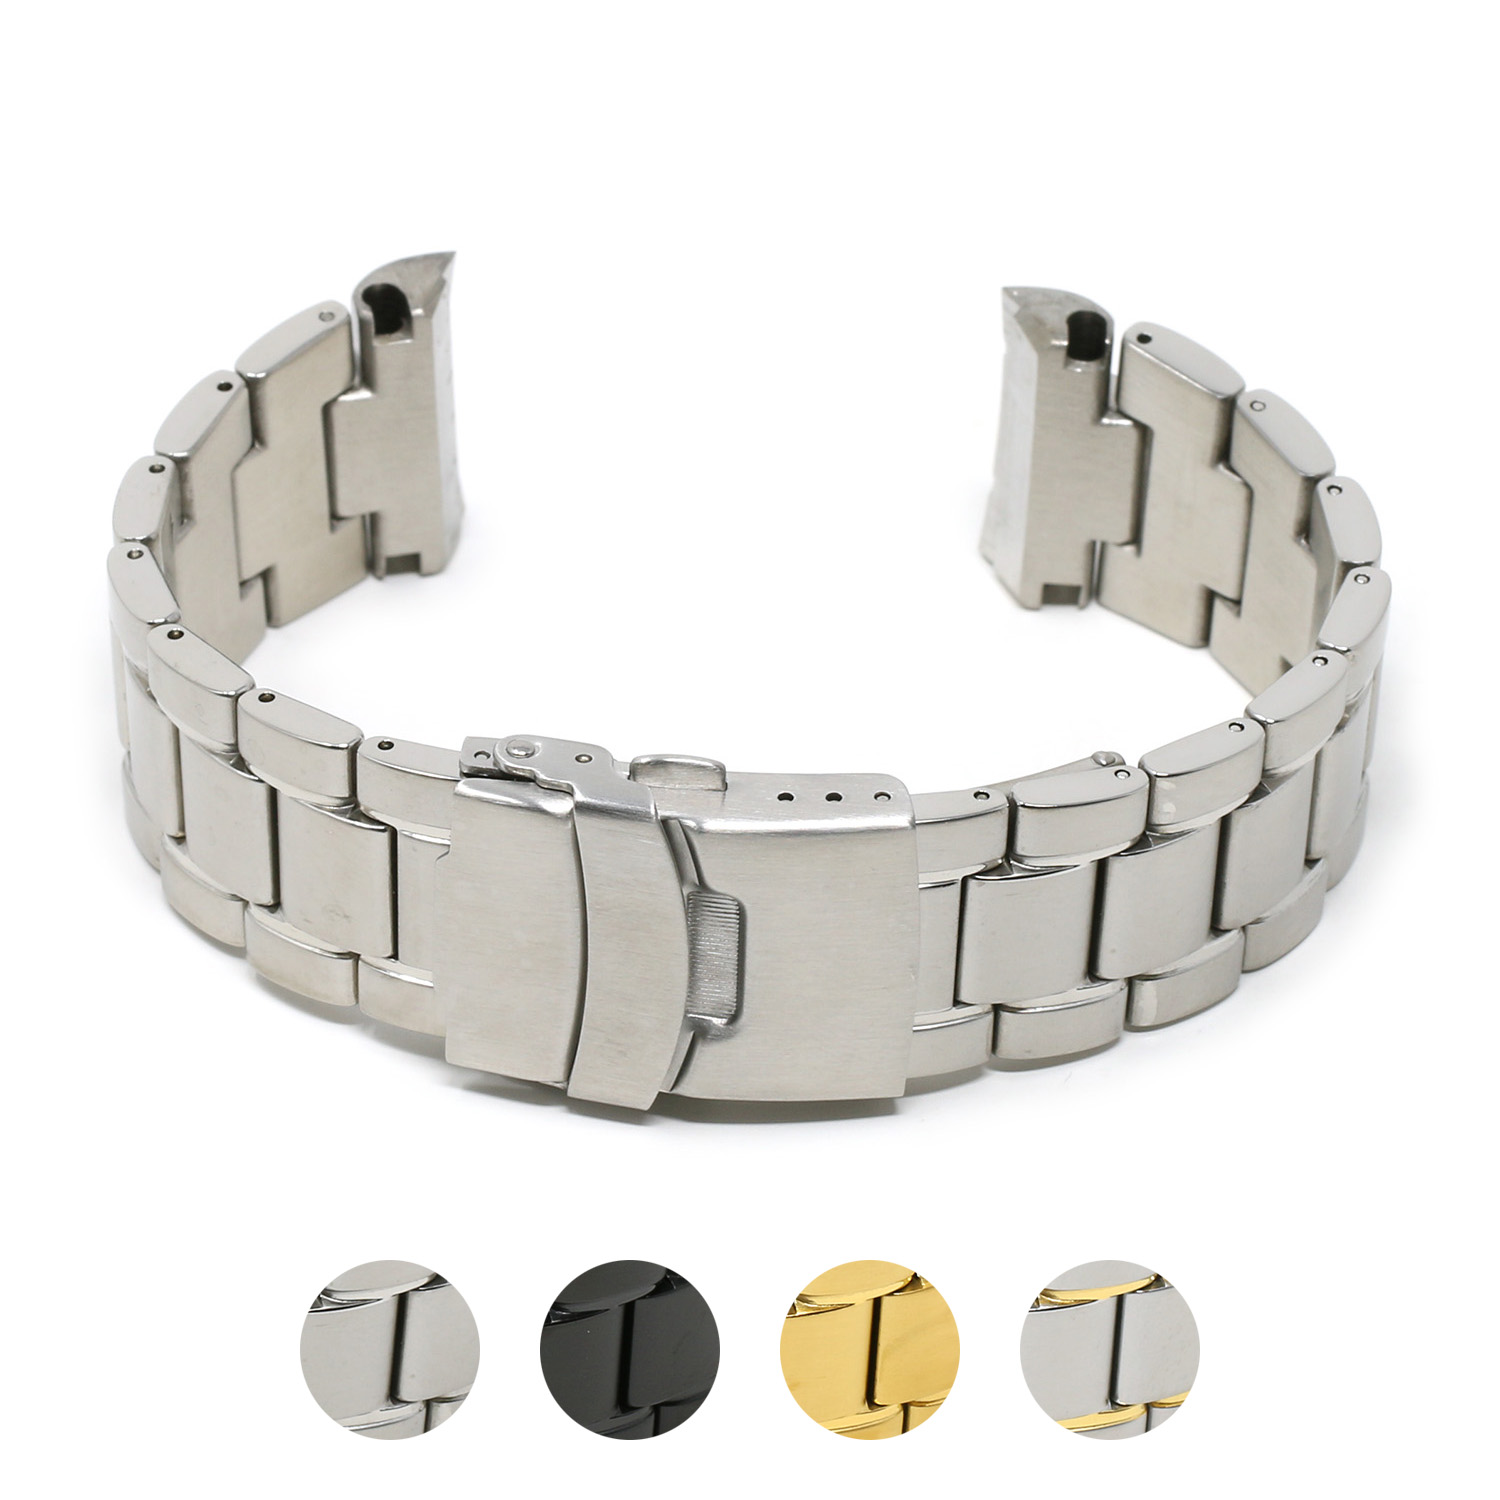 Stainless Steel Strap Seiko, Stainless Steel Bracelet, Seiko Turtle  Bracelet